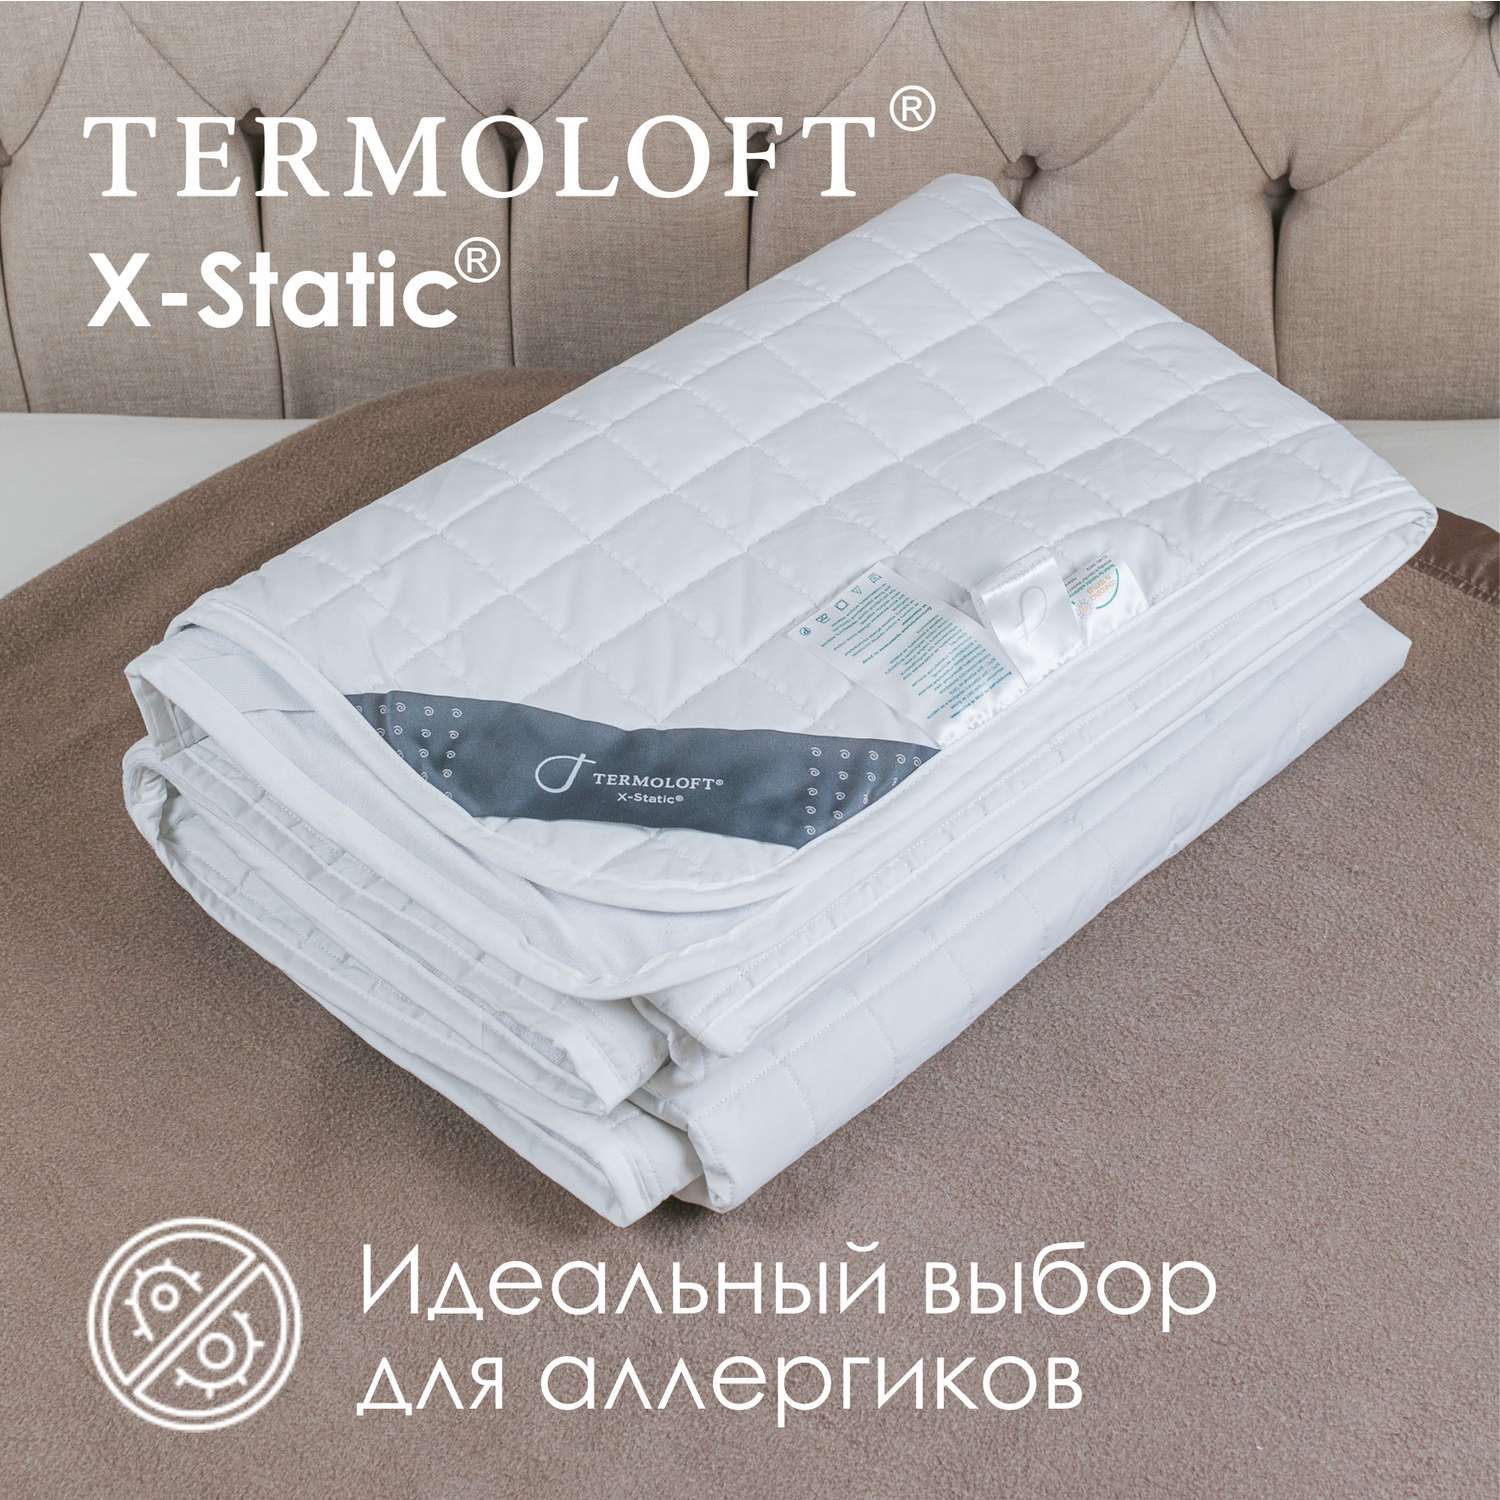 Наматрасник Termoloft X-Static с волокнами серебра 120х200 - фото 3